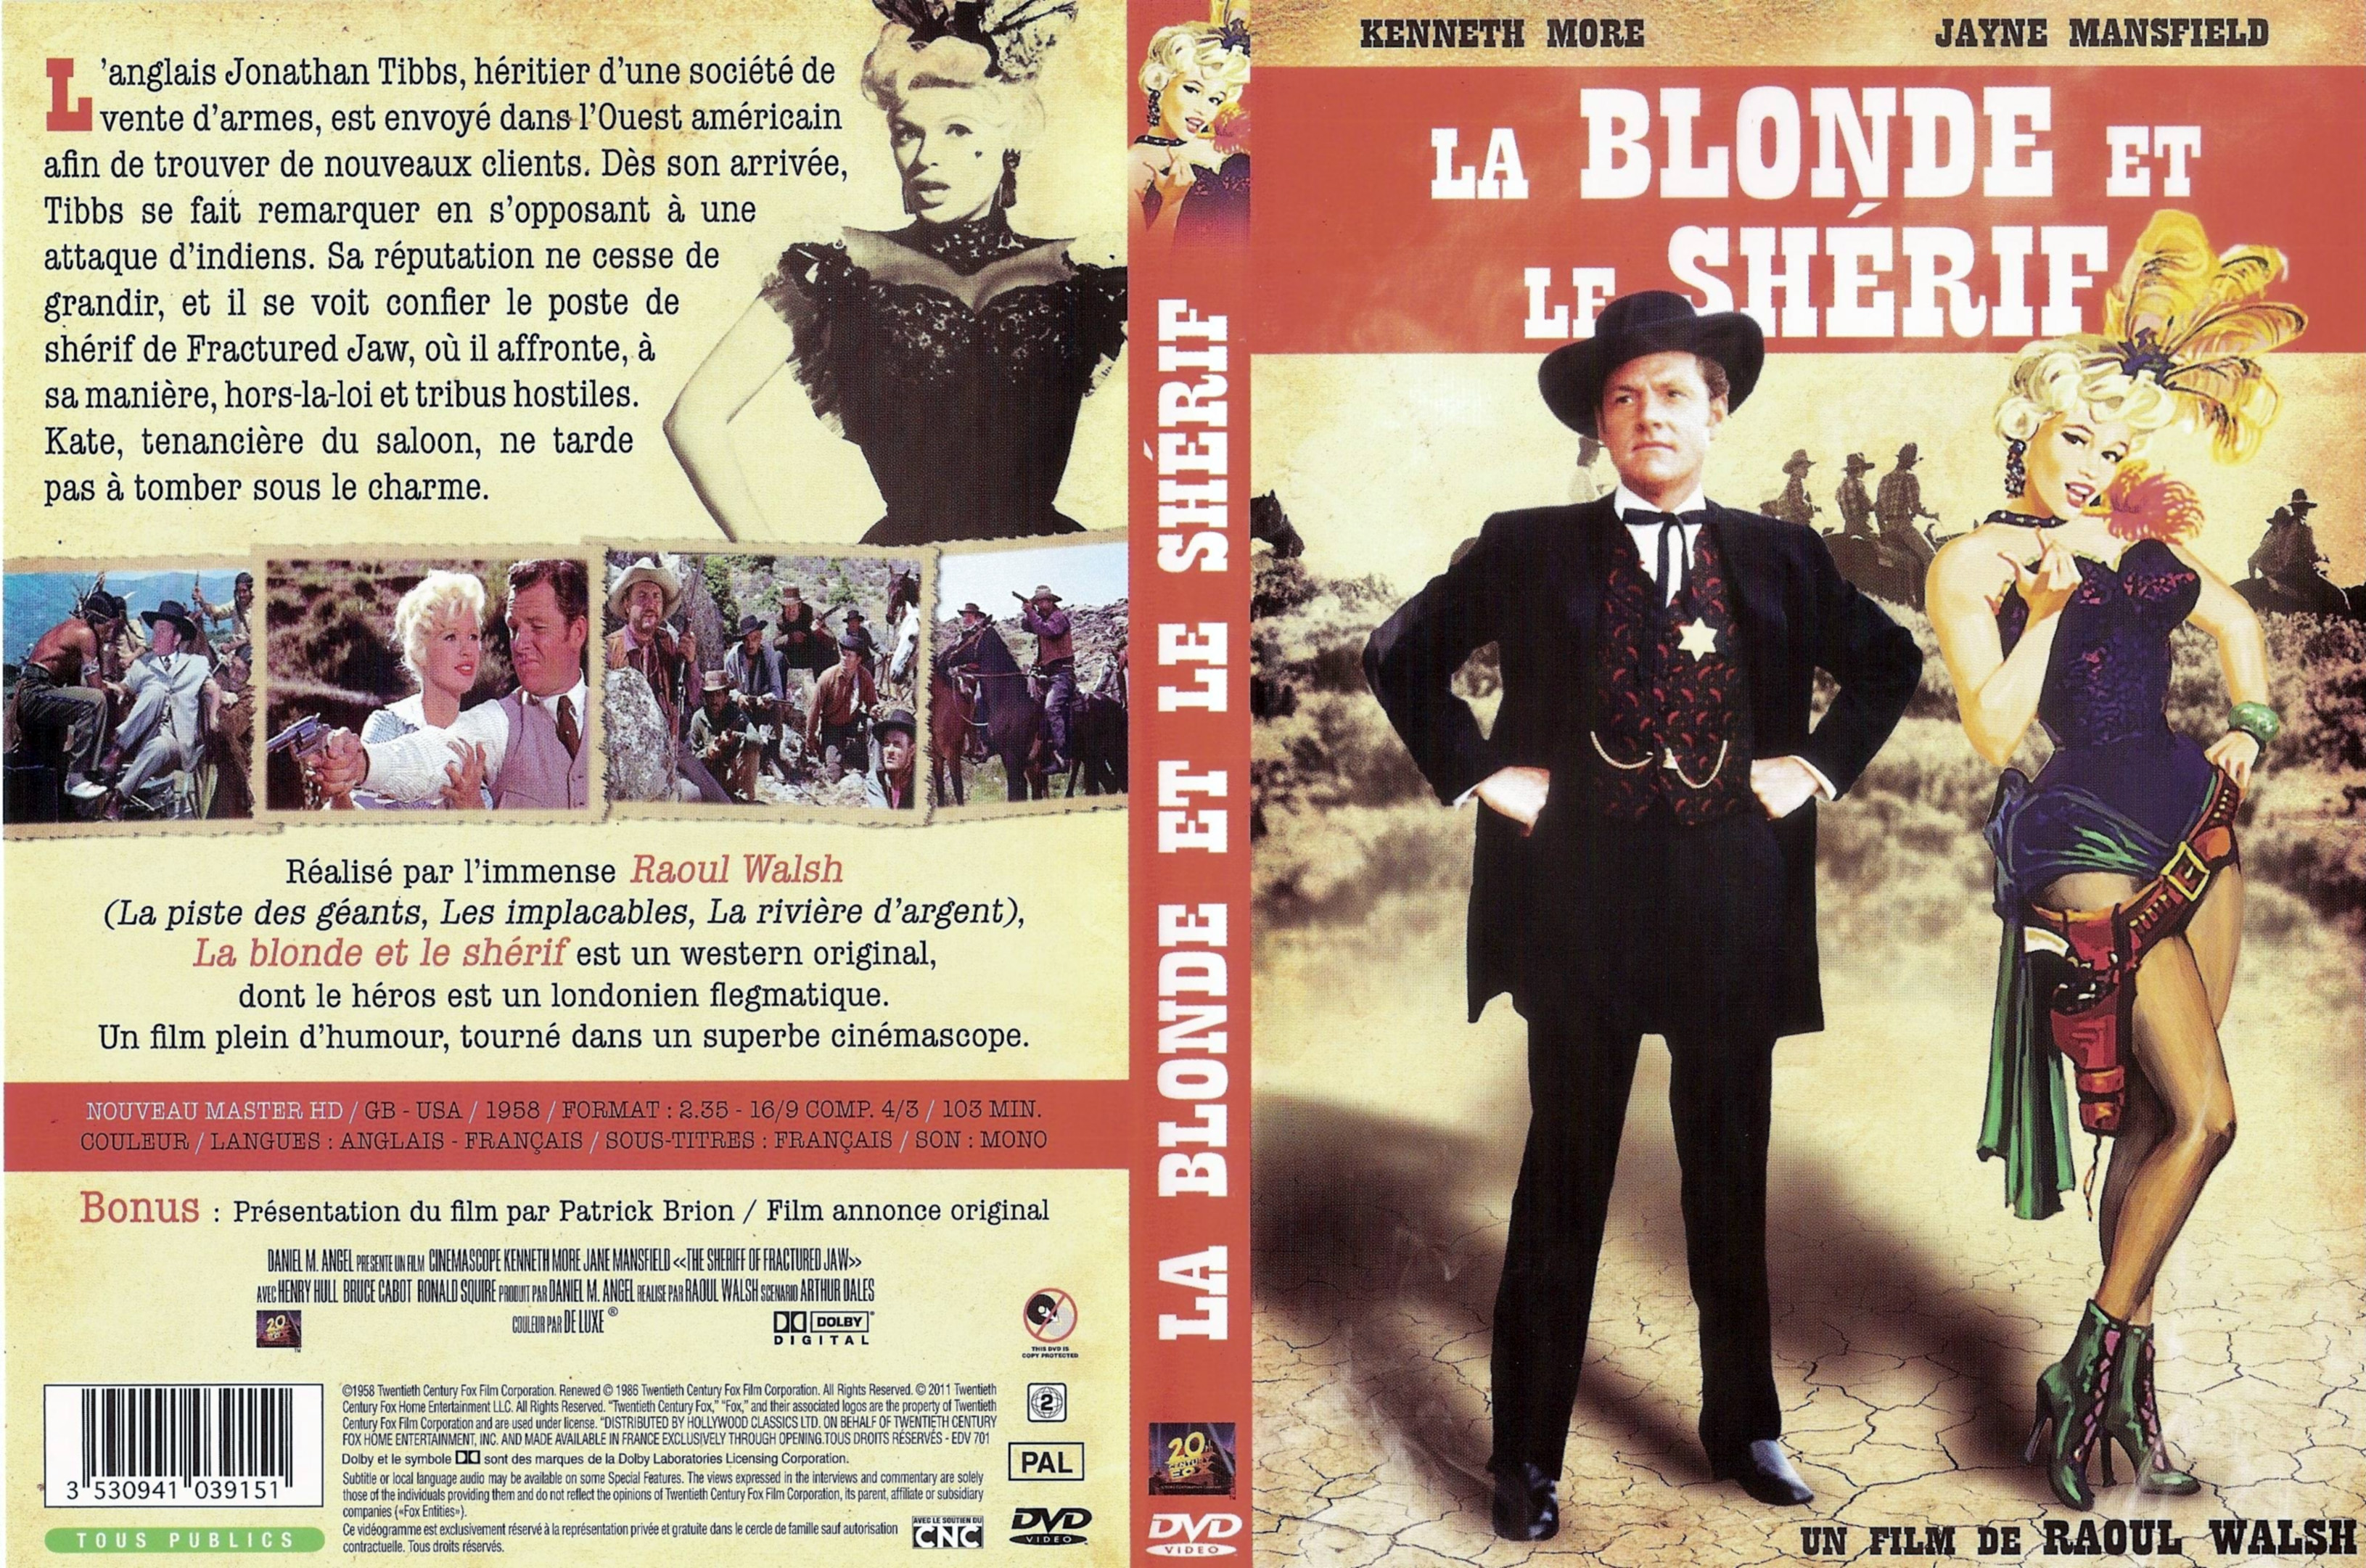 Jaquette DVD La blonde et le sherif v2